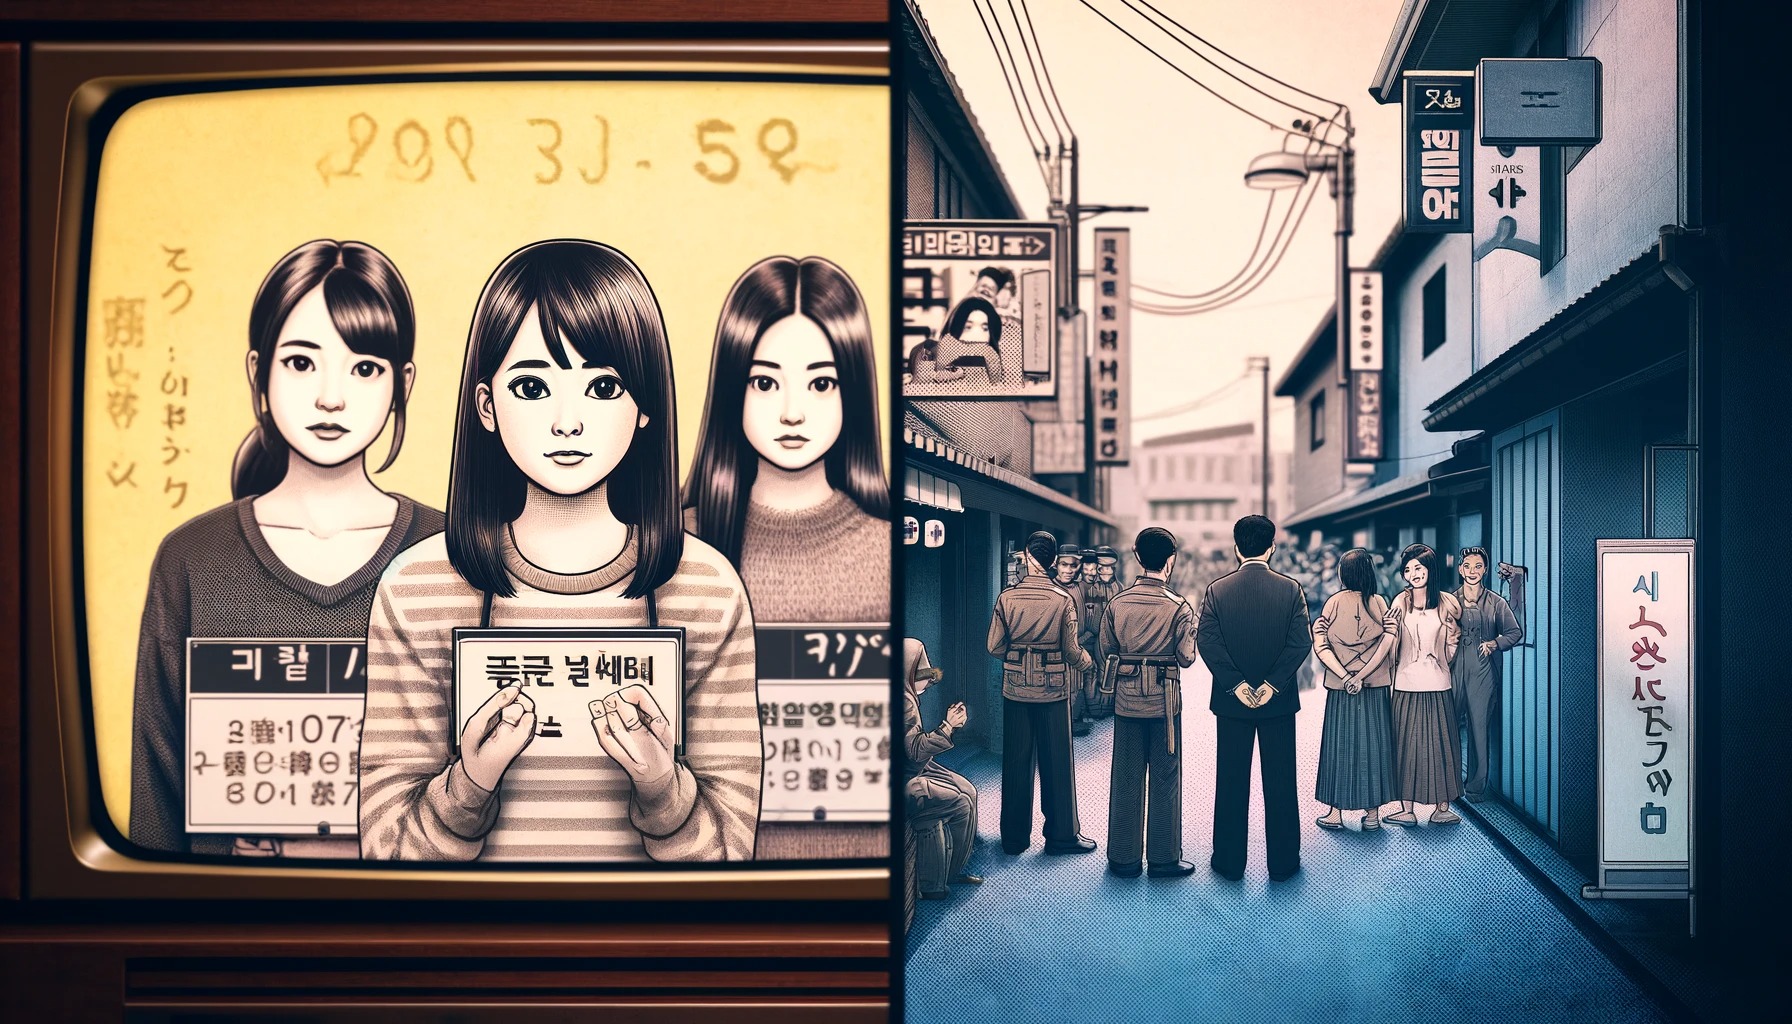 【緊急速報】韓国で20代の日本人女性3人が逮捕された事件、闇が深すぎる模様